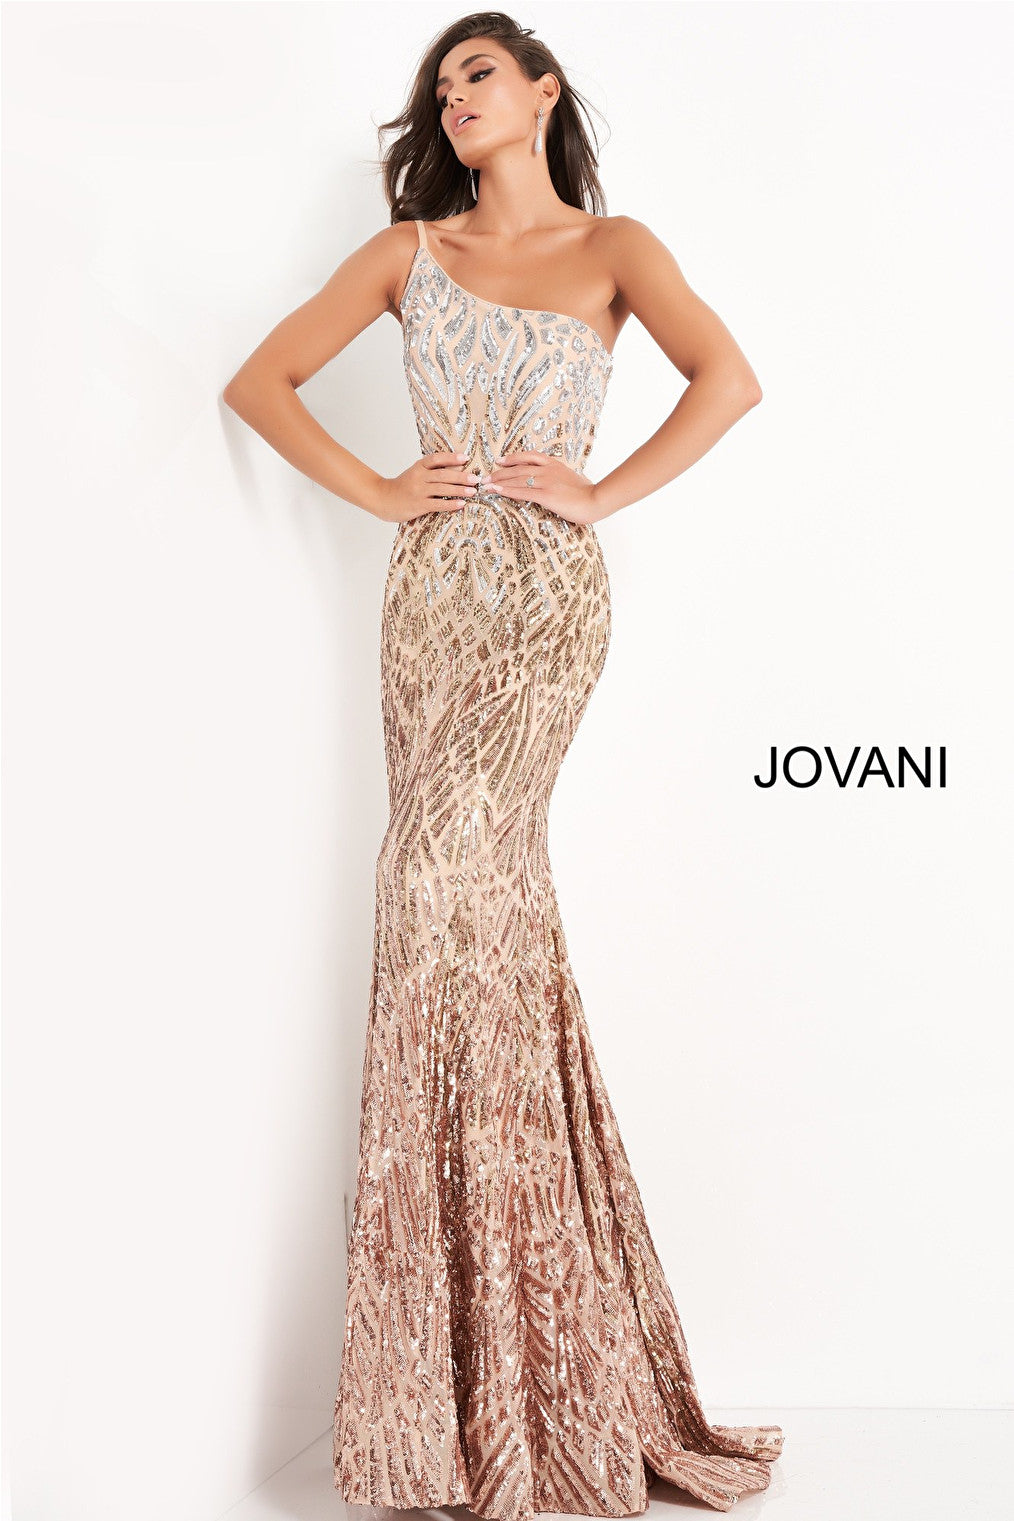 Cafe silver embellished prom dress Jovani 06469